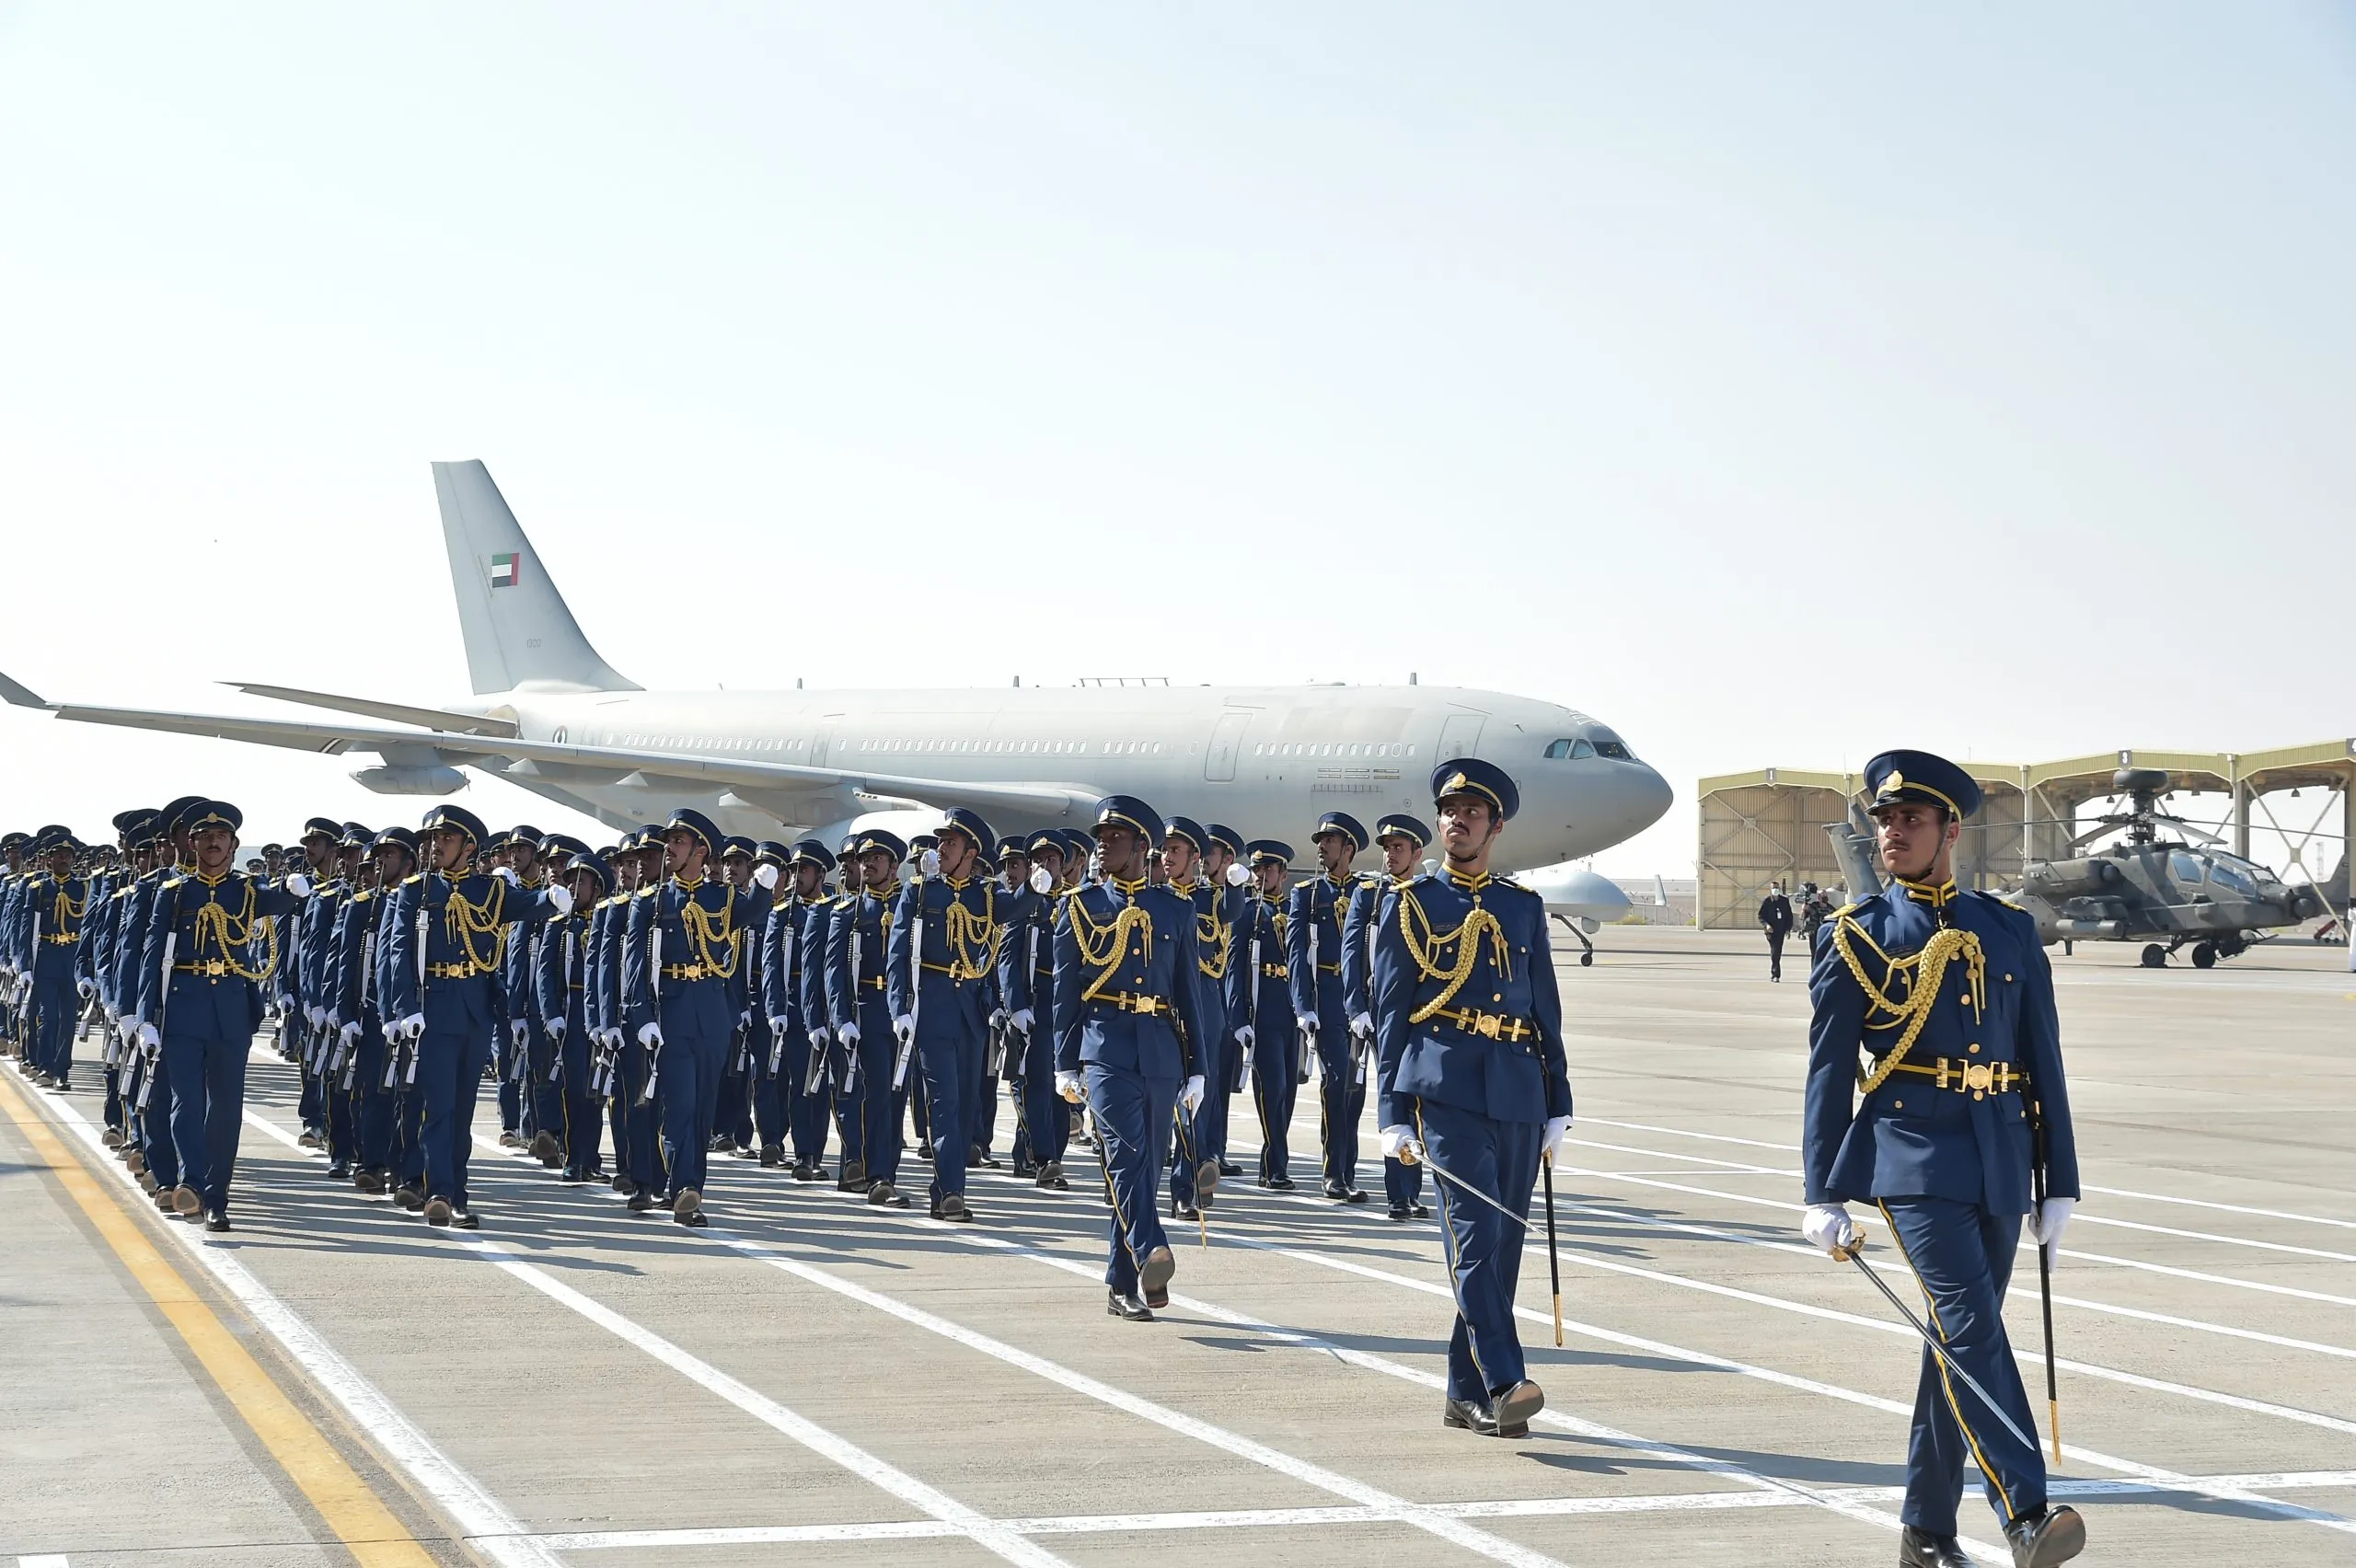 صور الجيش الإماراتي وعتاده وابرز الرتب العسكرية الإماراتية